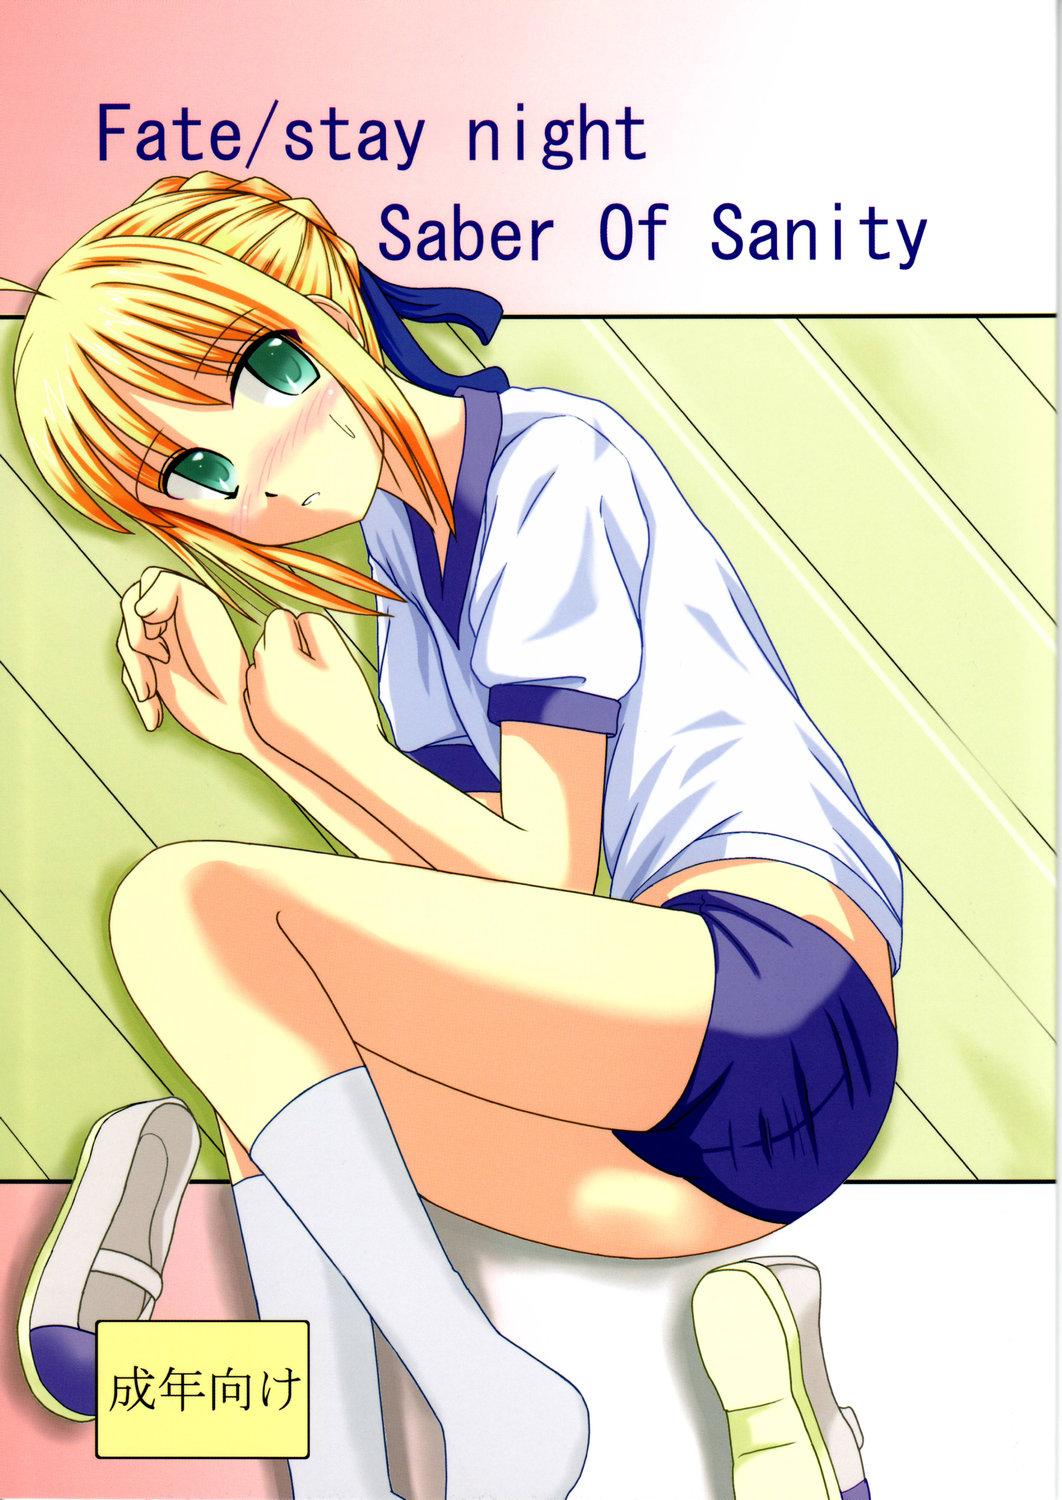 Saber Of Sanity 0